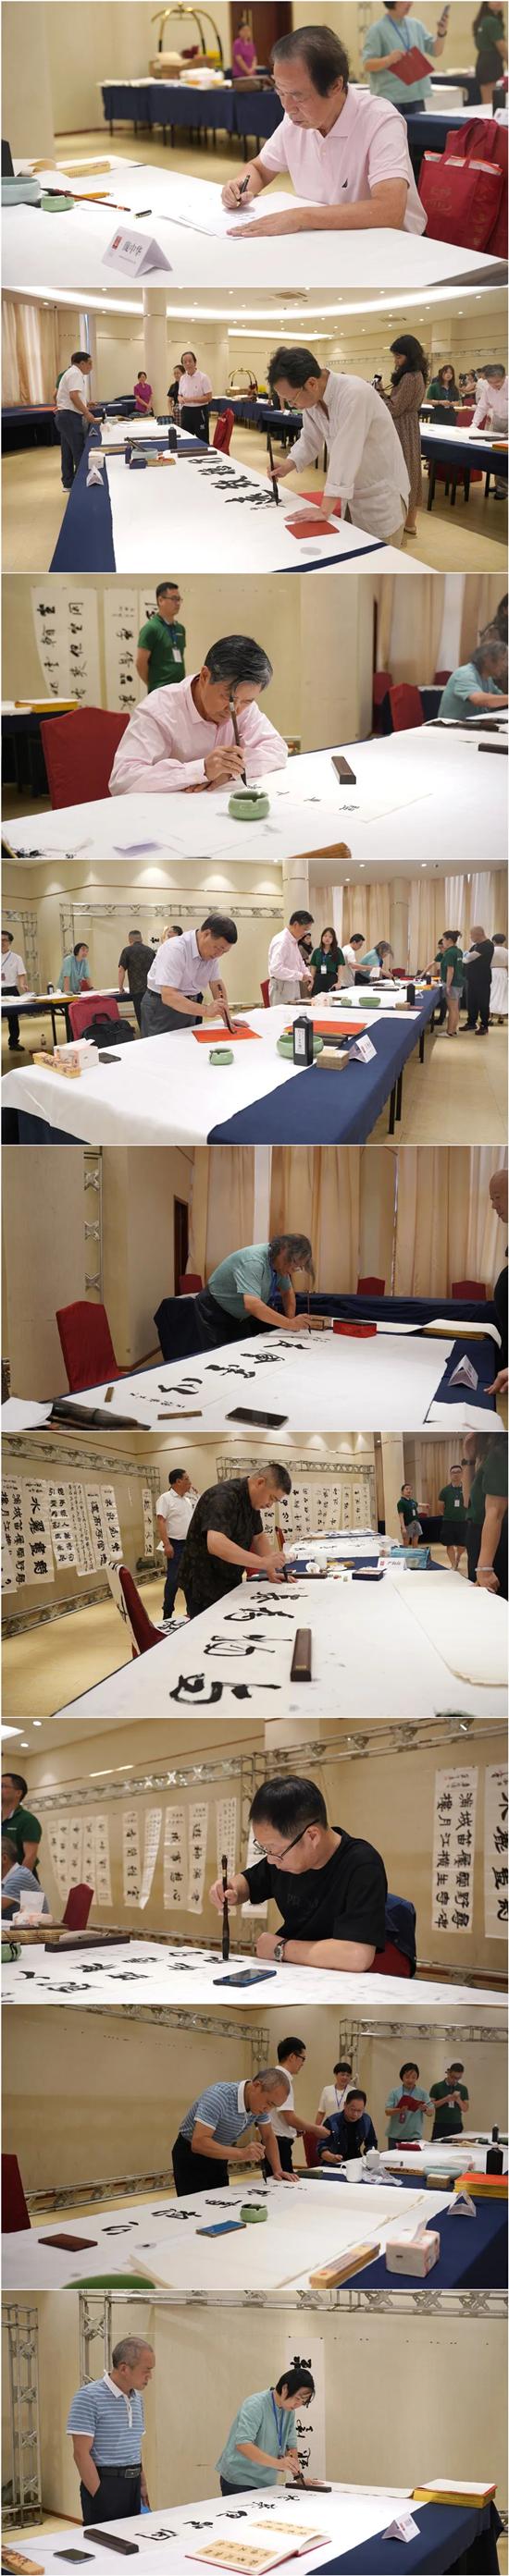 “英雄杯”第14届中国钢笔书法大赛举行评审终评活动